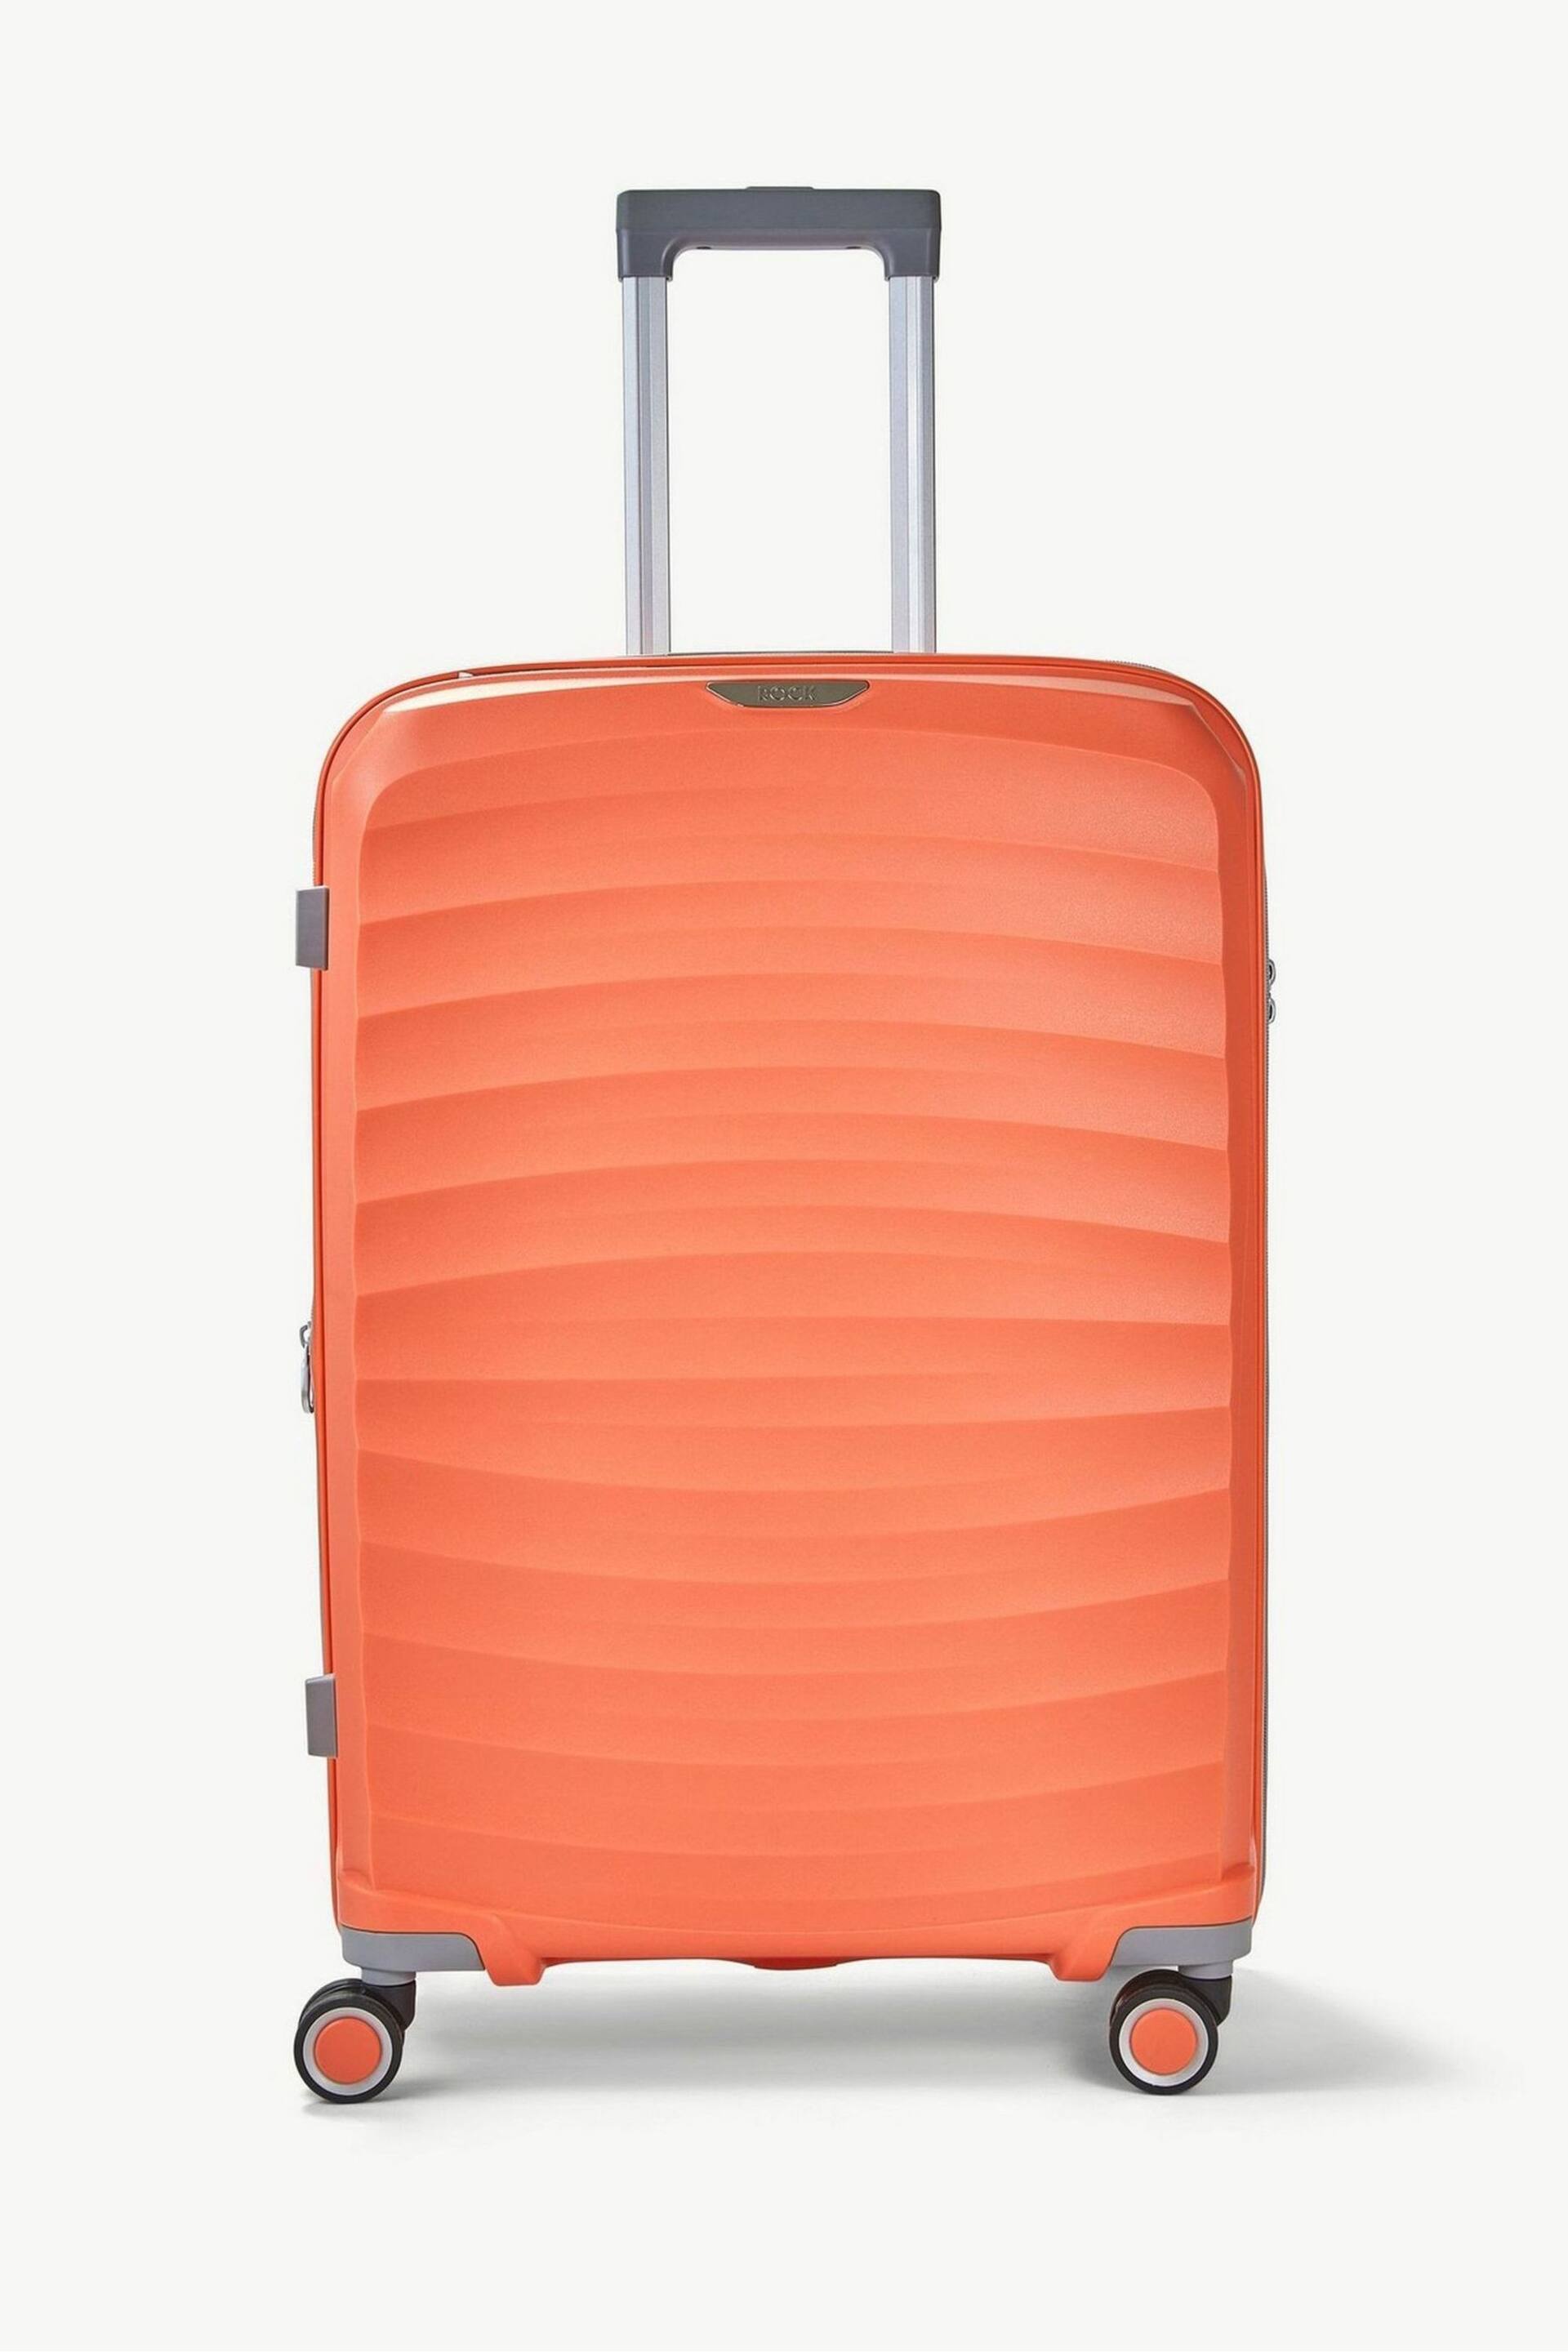 Rock Luggage Sunwave Medium Suitcase - Image 2 of 7